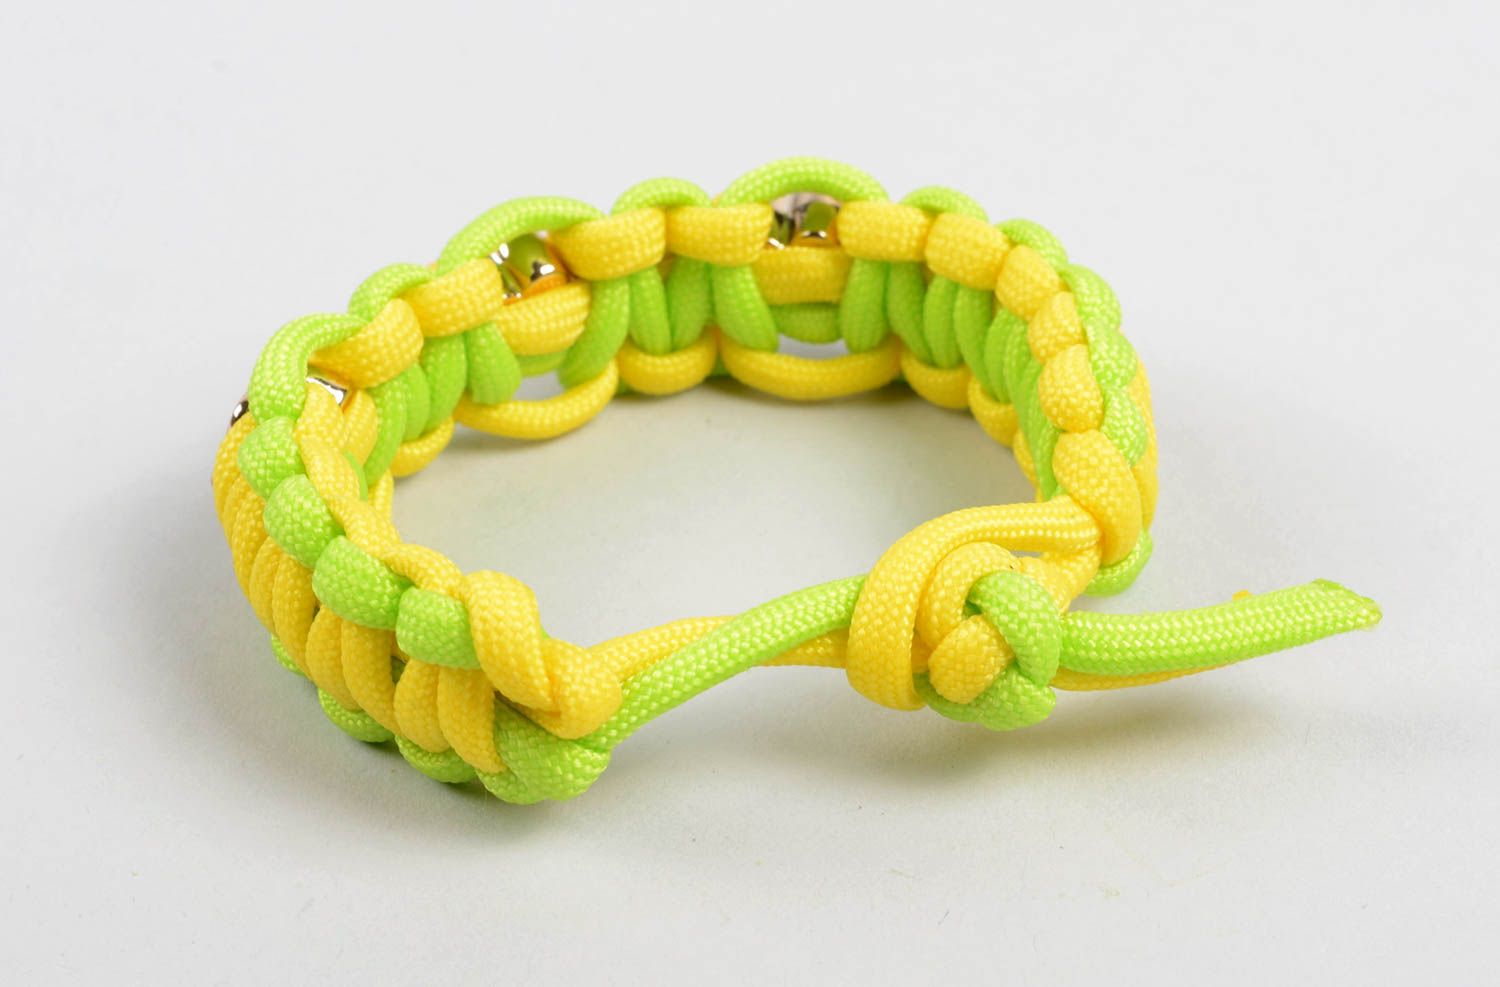 Survival bracelet braided bracelet paracord bracelet stylish gift for men photo 2